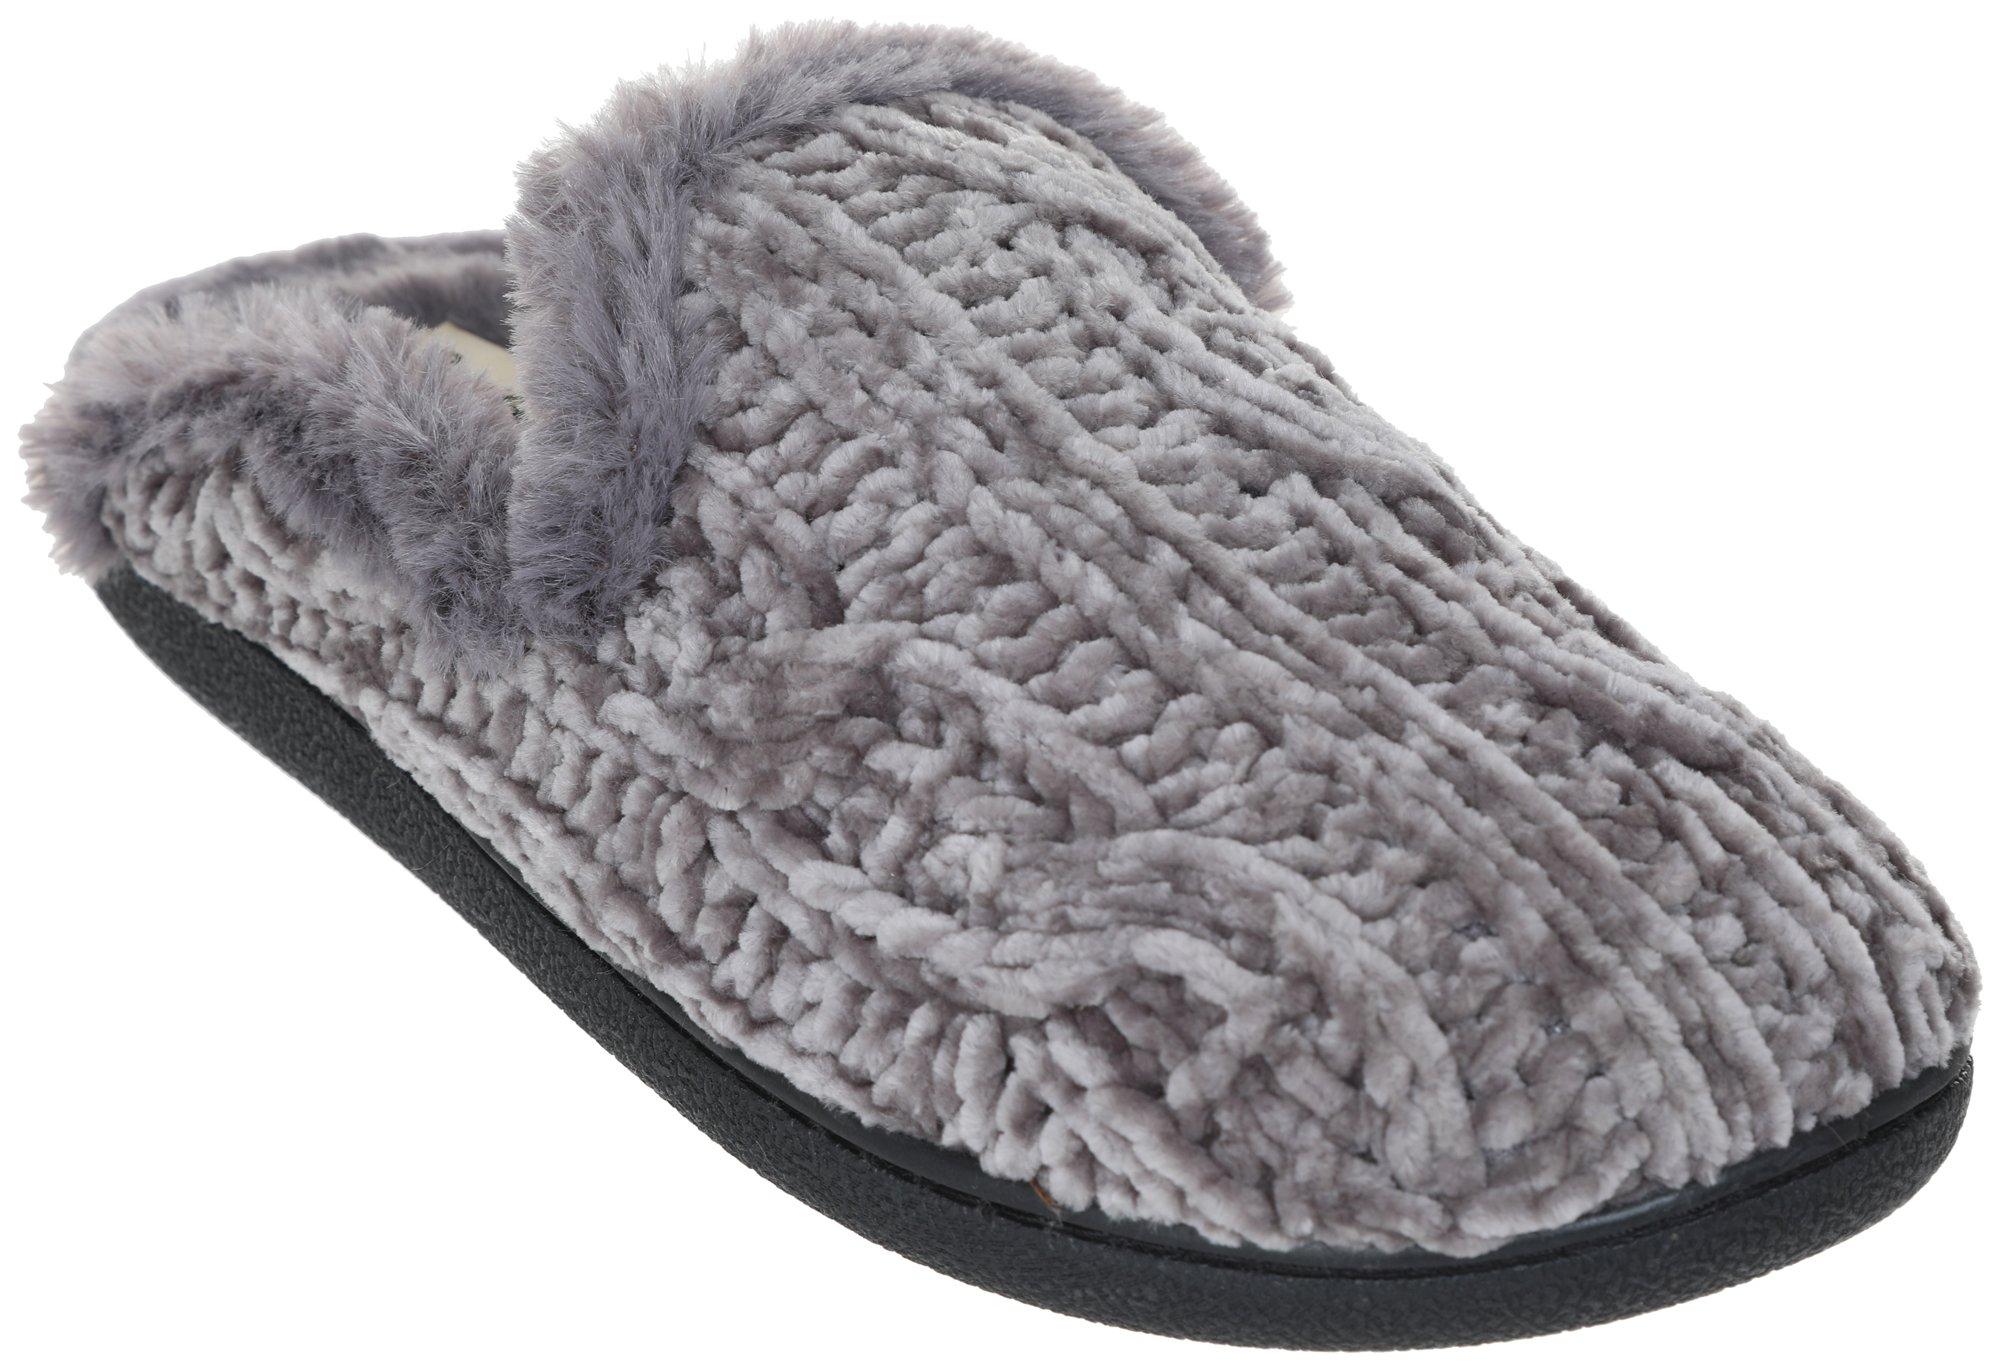 Women's Cozy Faux Fur Slippers